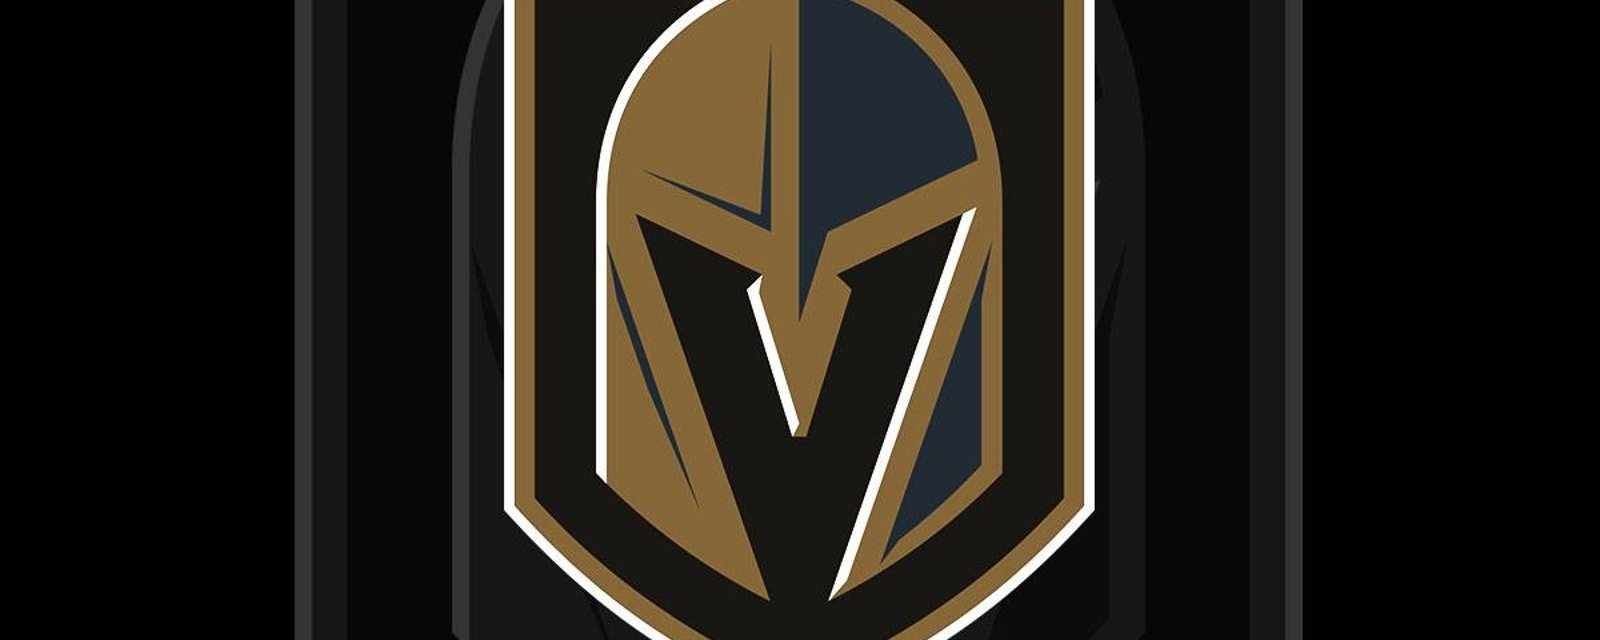 Breaking: Major update regarding Las Vegas Golden Knights